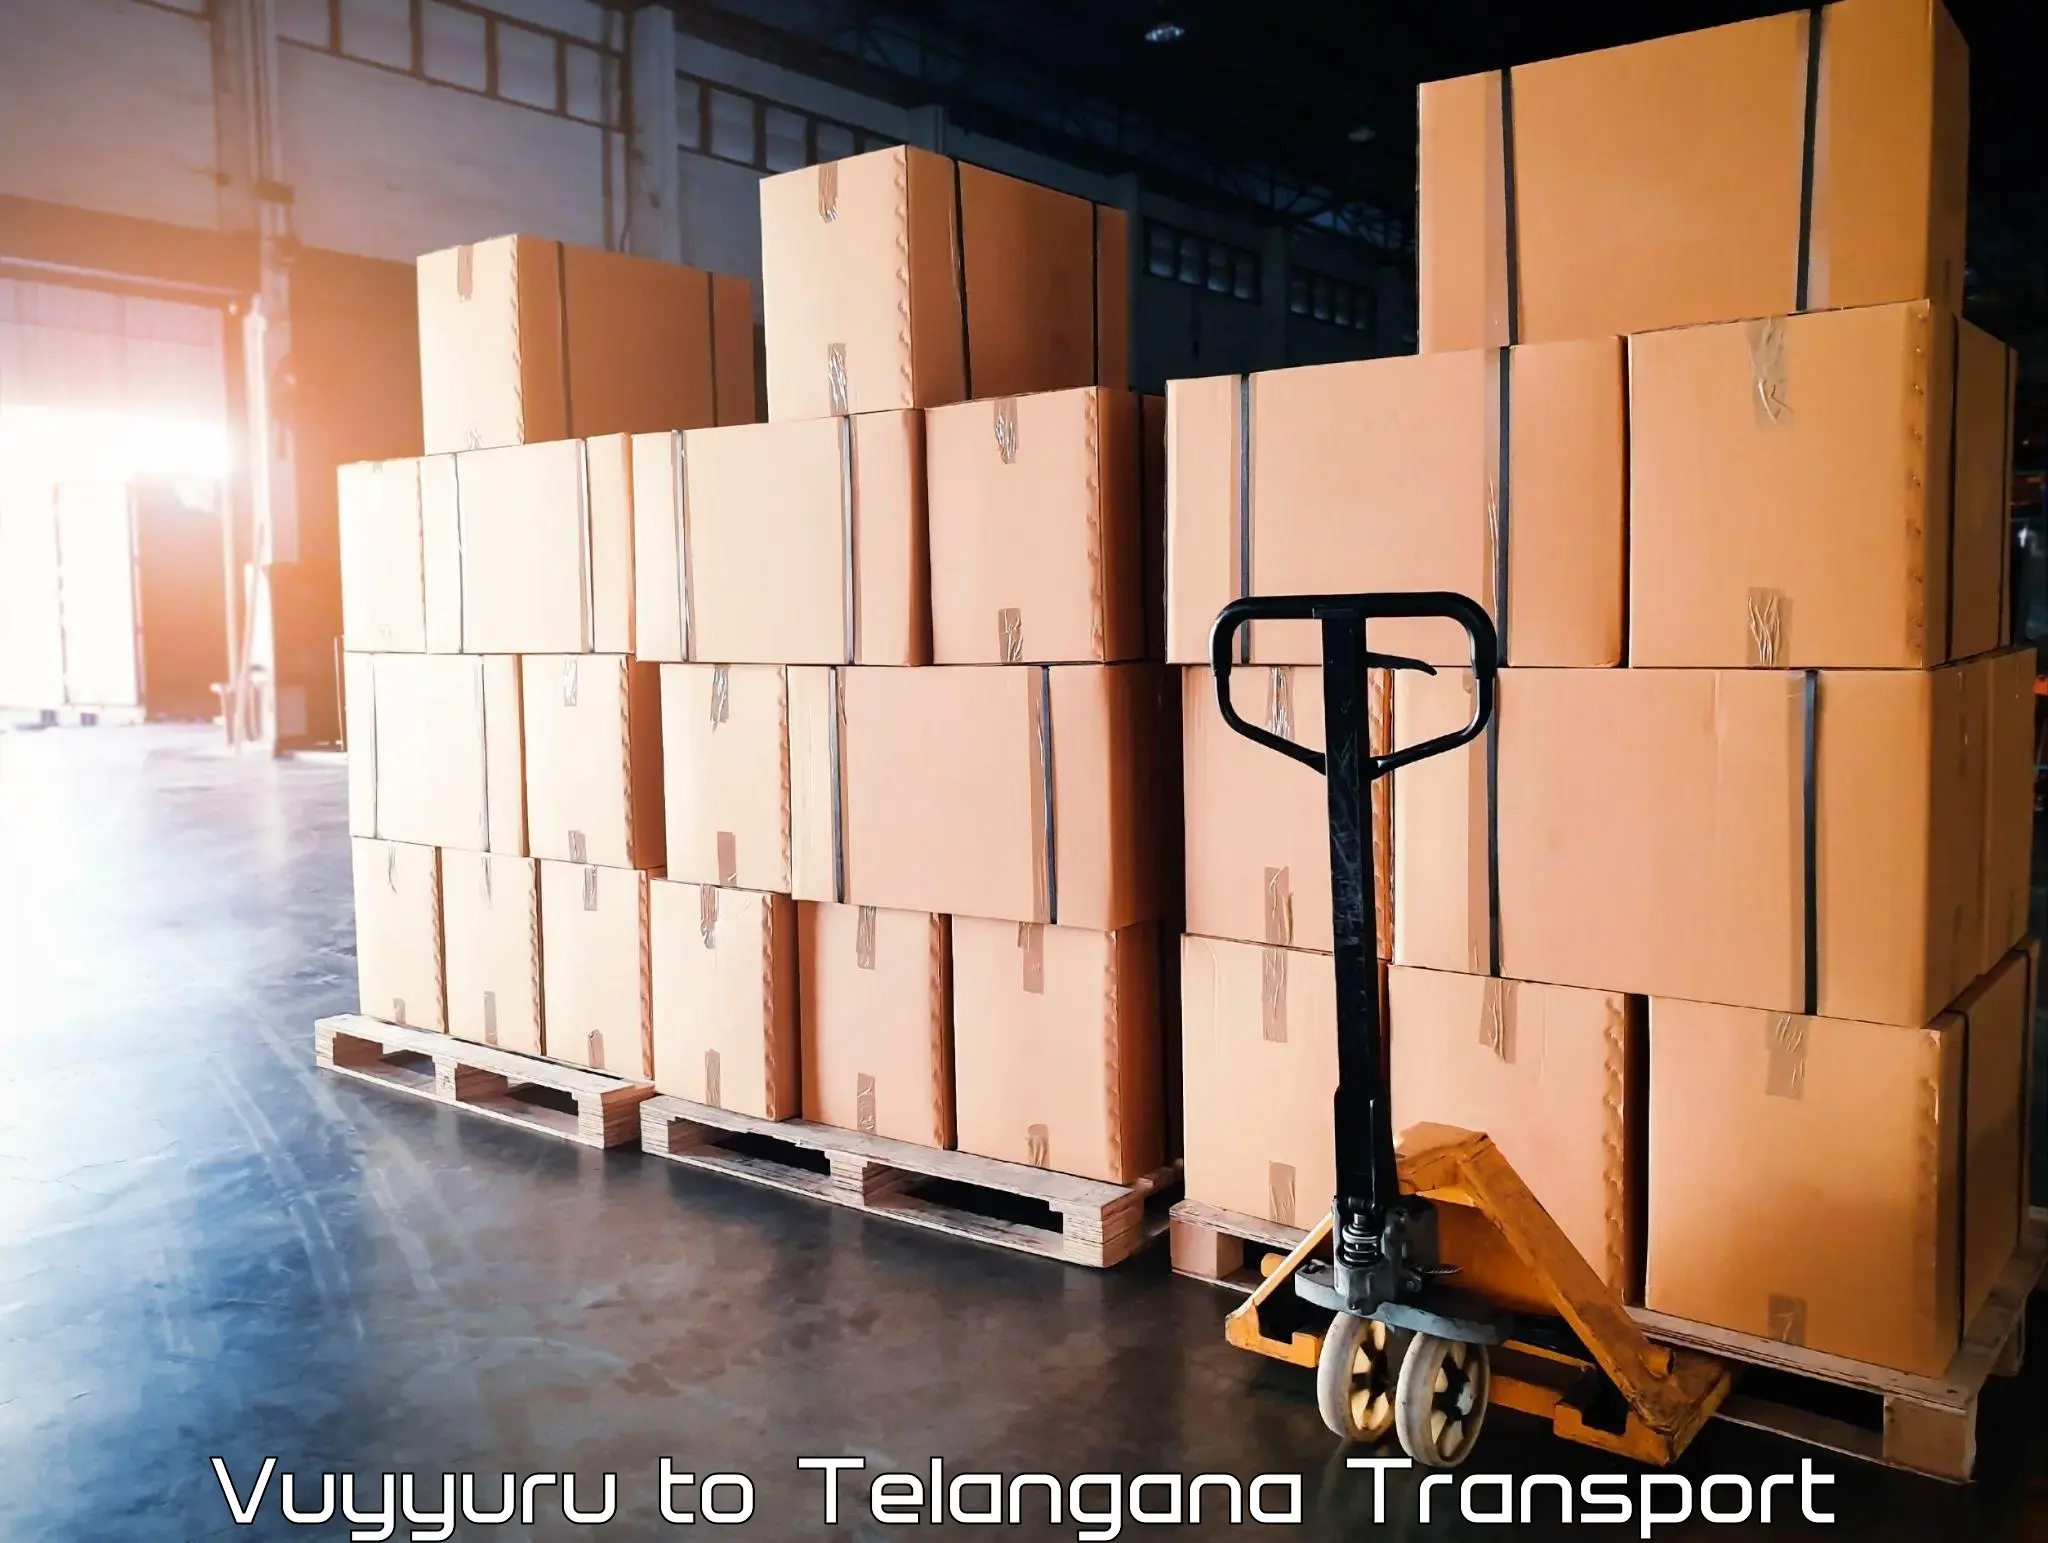 Container transportation services in Vuyyuru to Patancheru